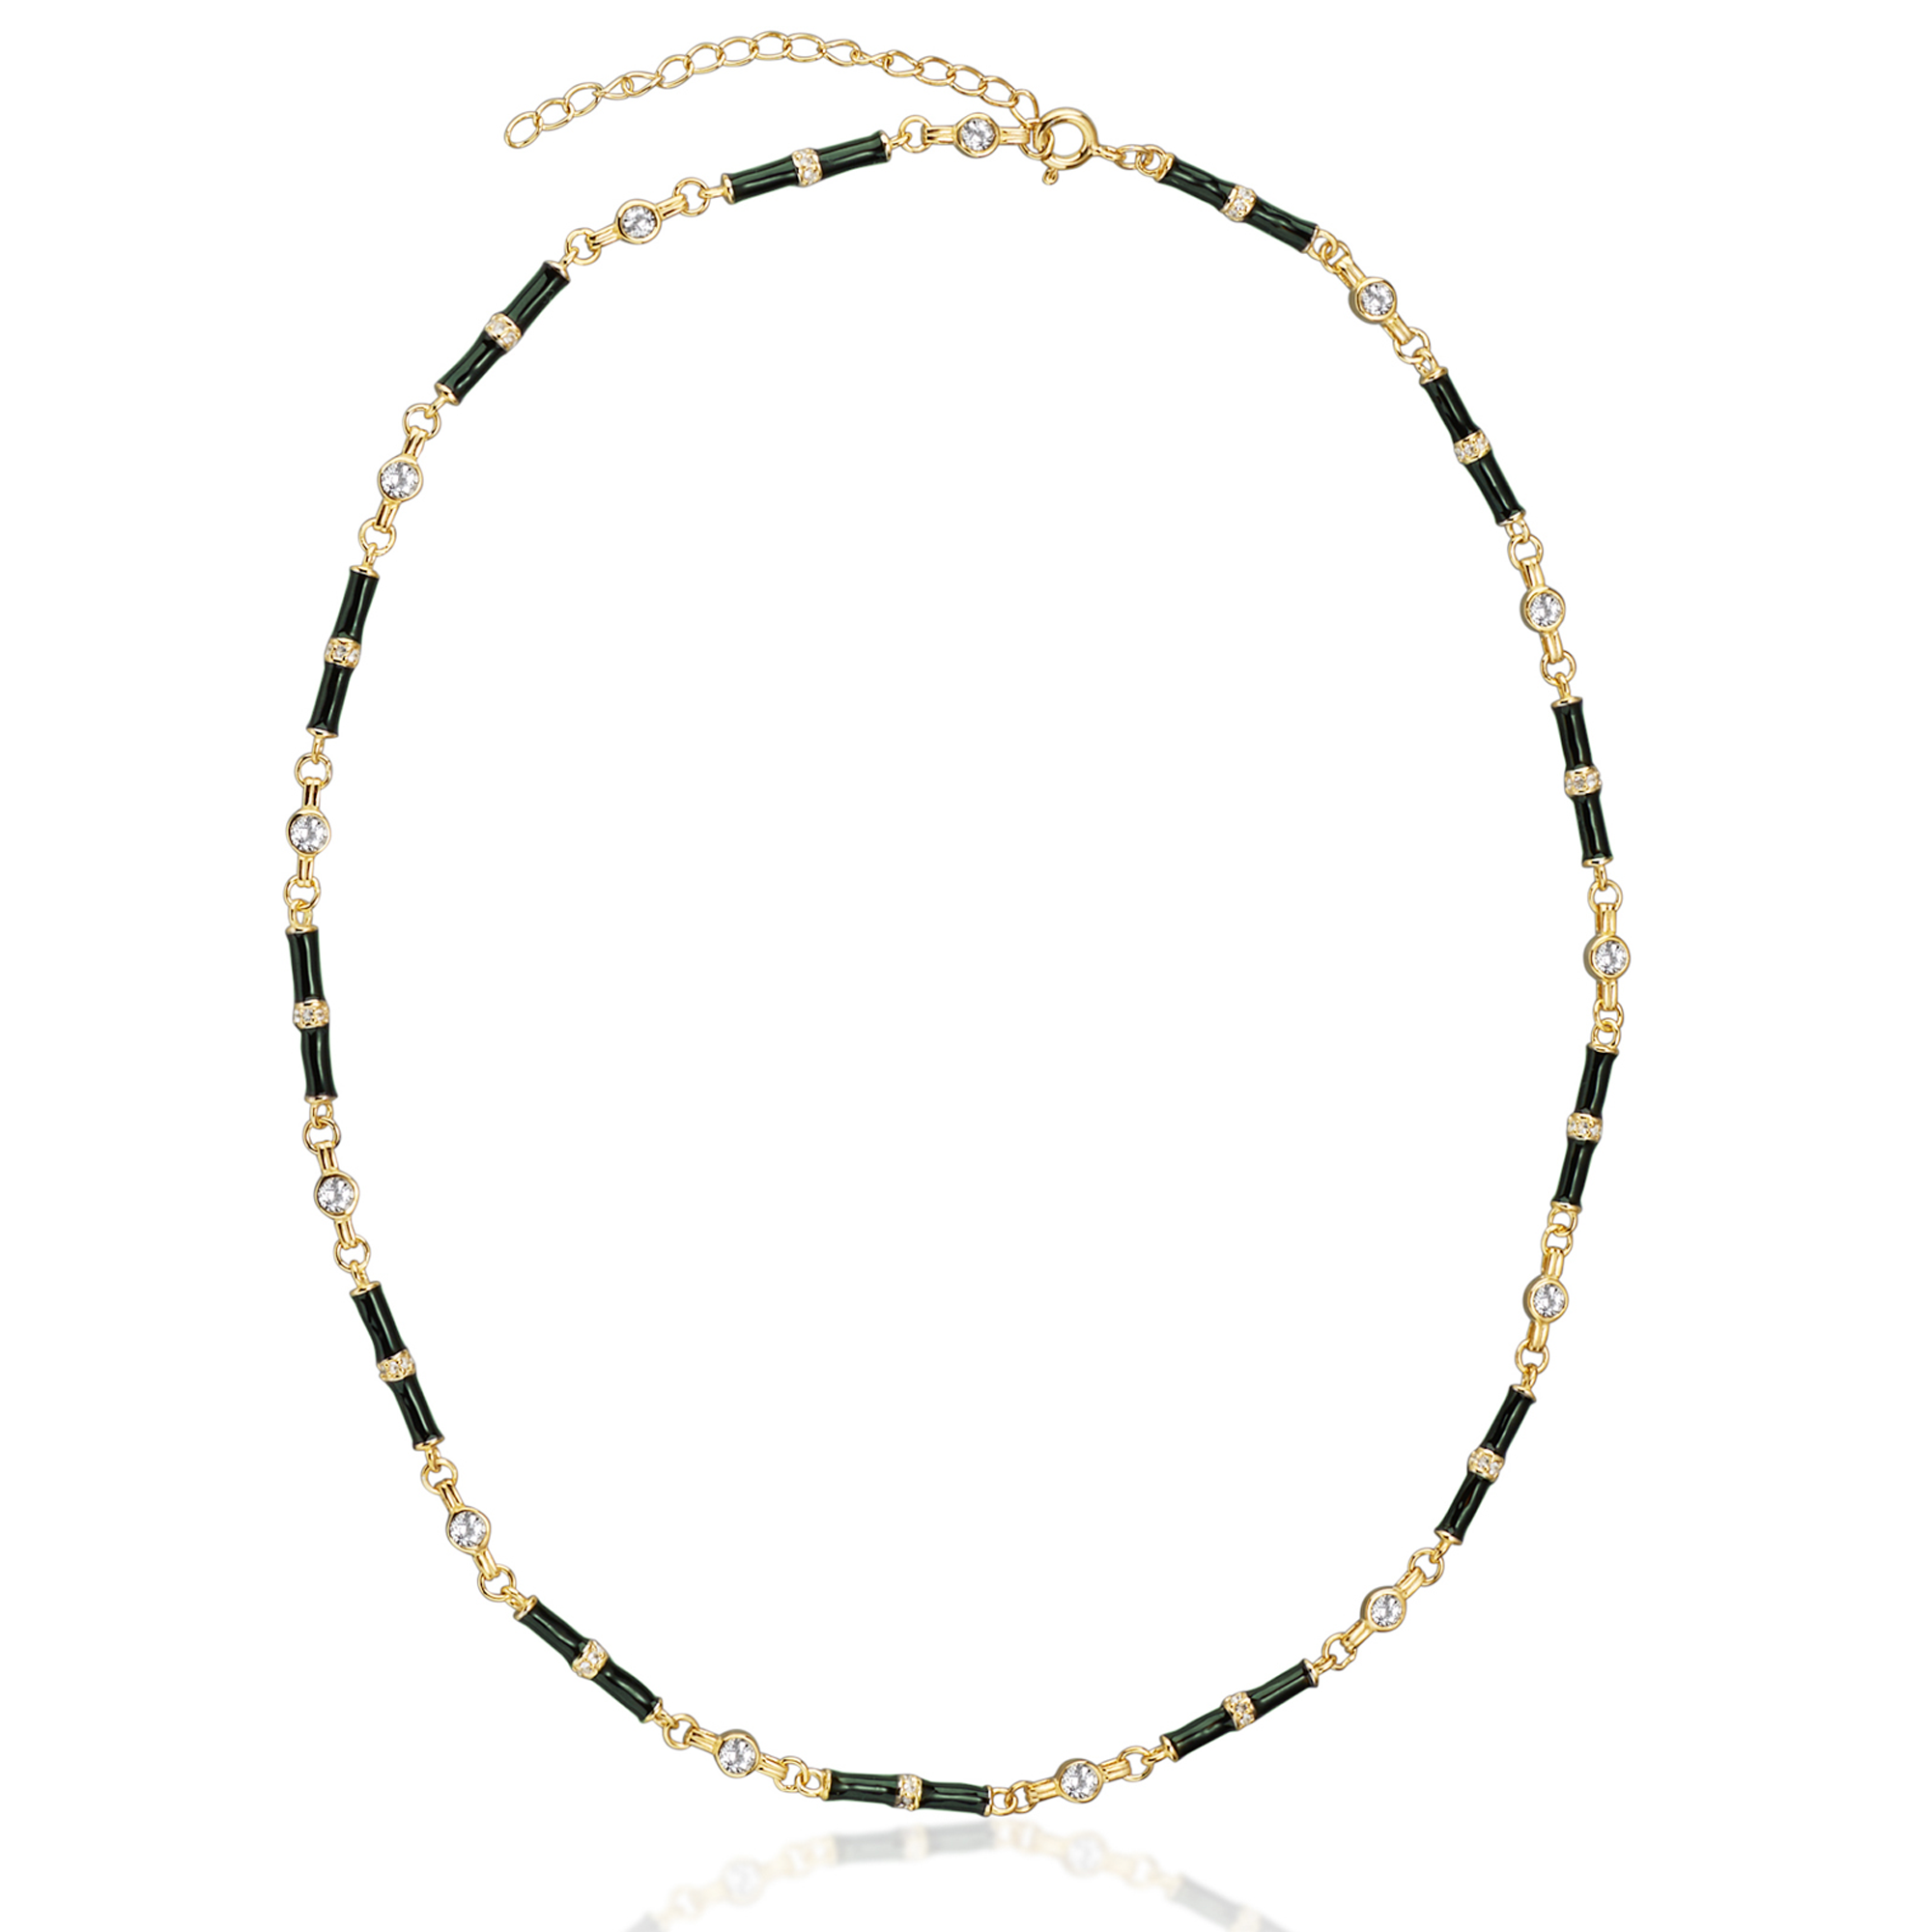 Marlowe Green Enamel Necklace